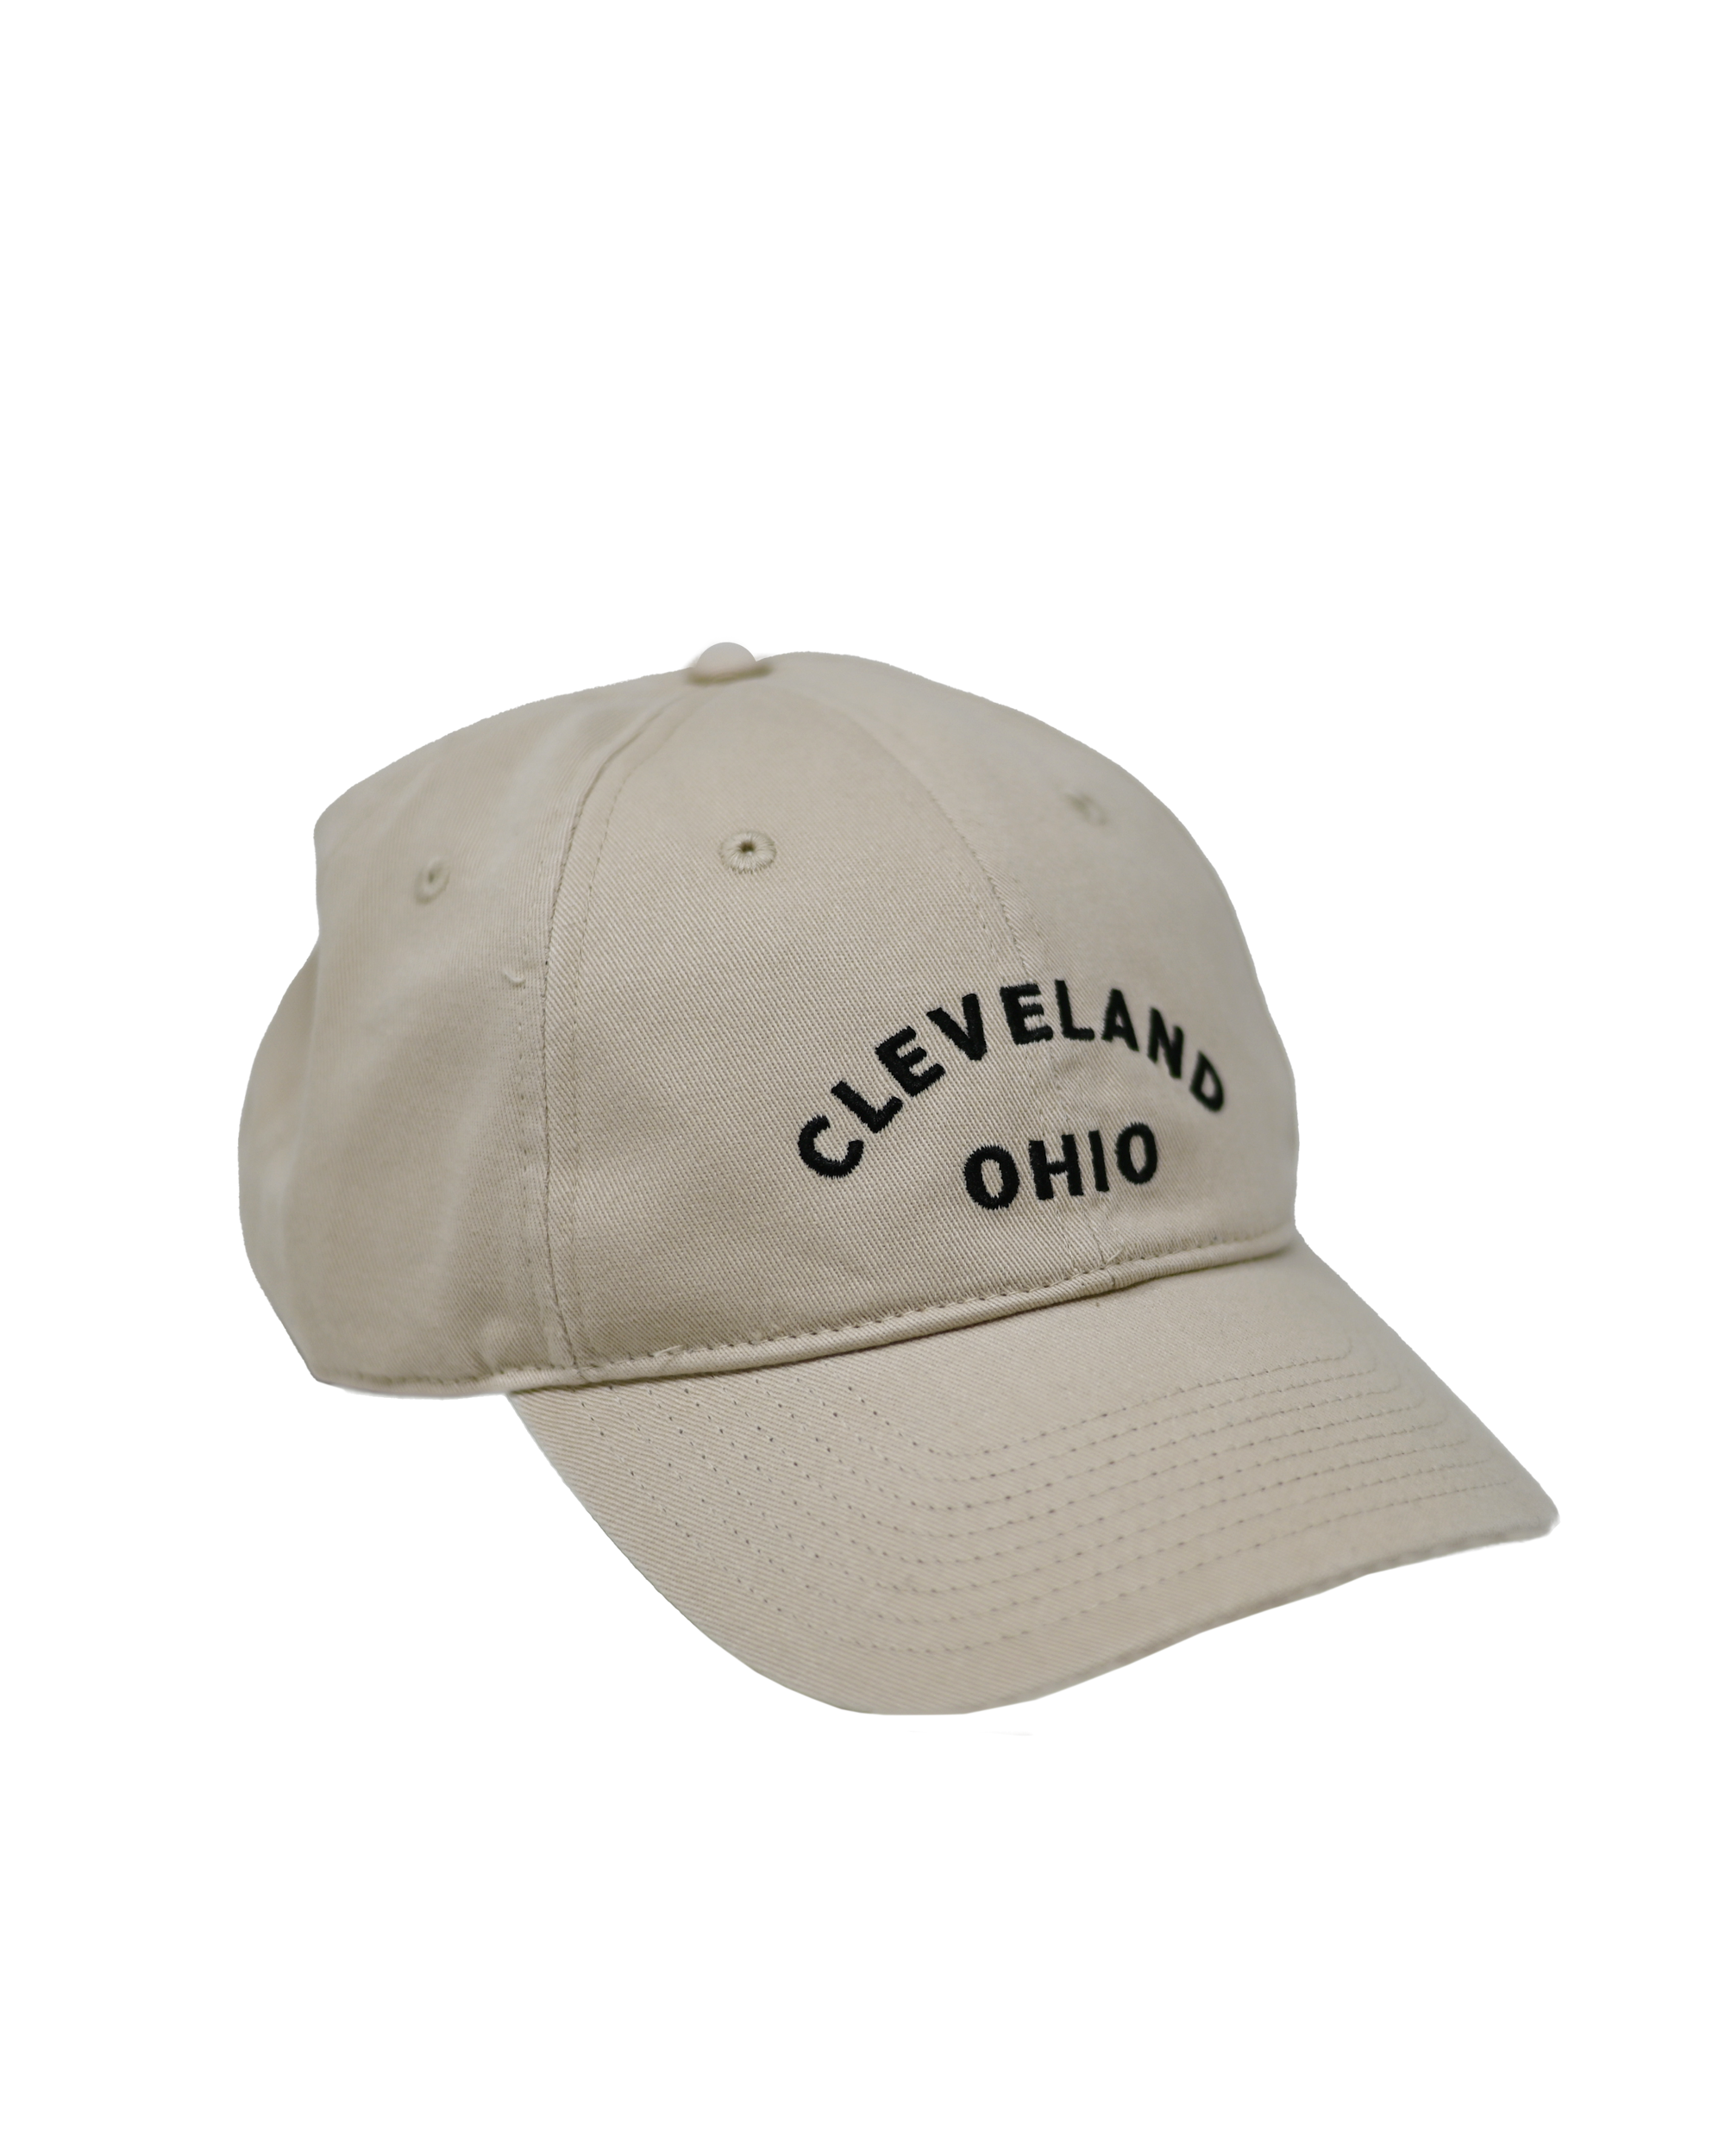 Cleveland Ohio Dad Hat Hat